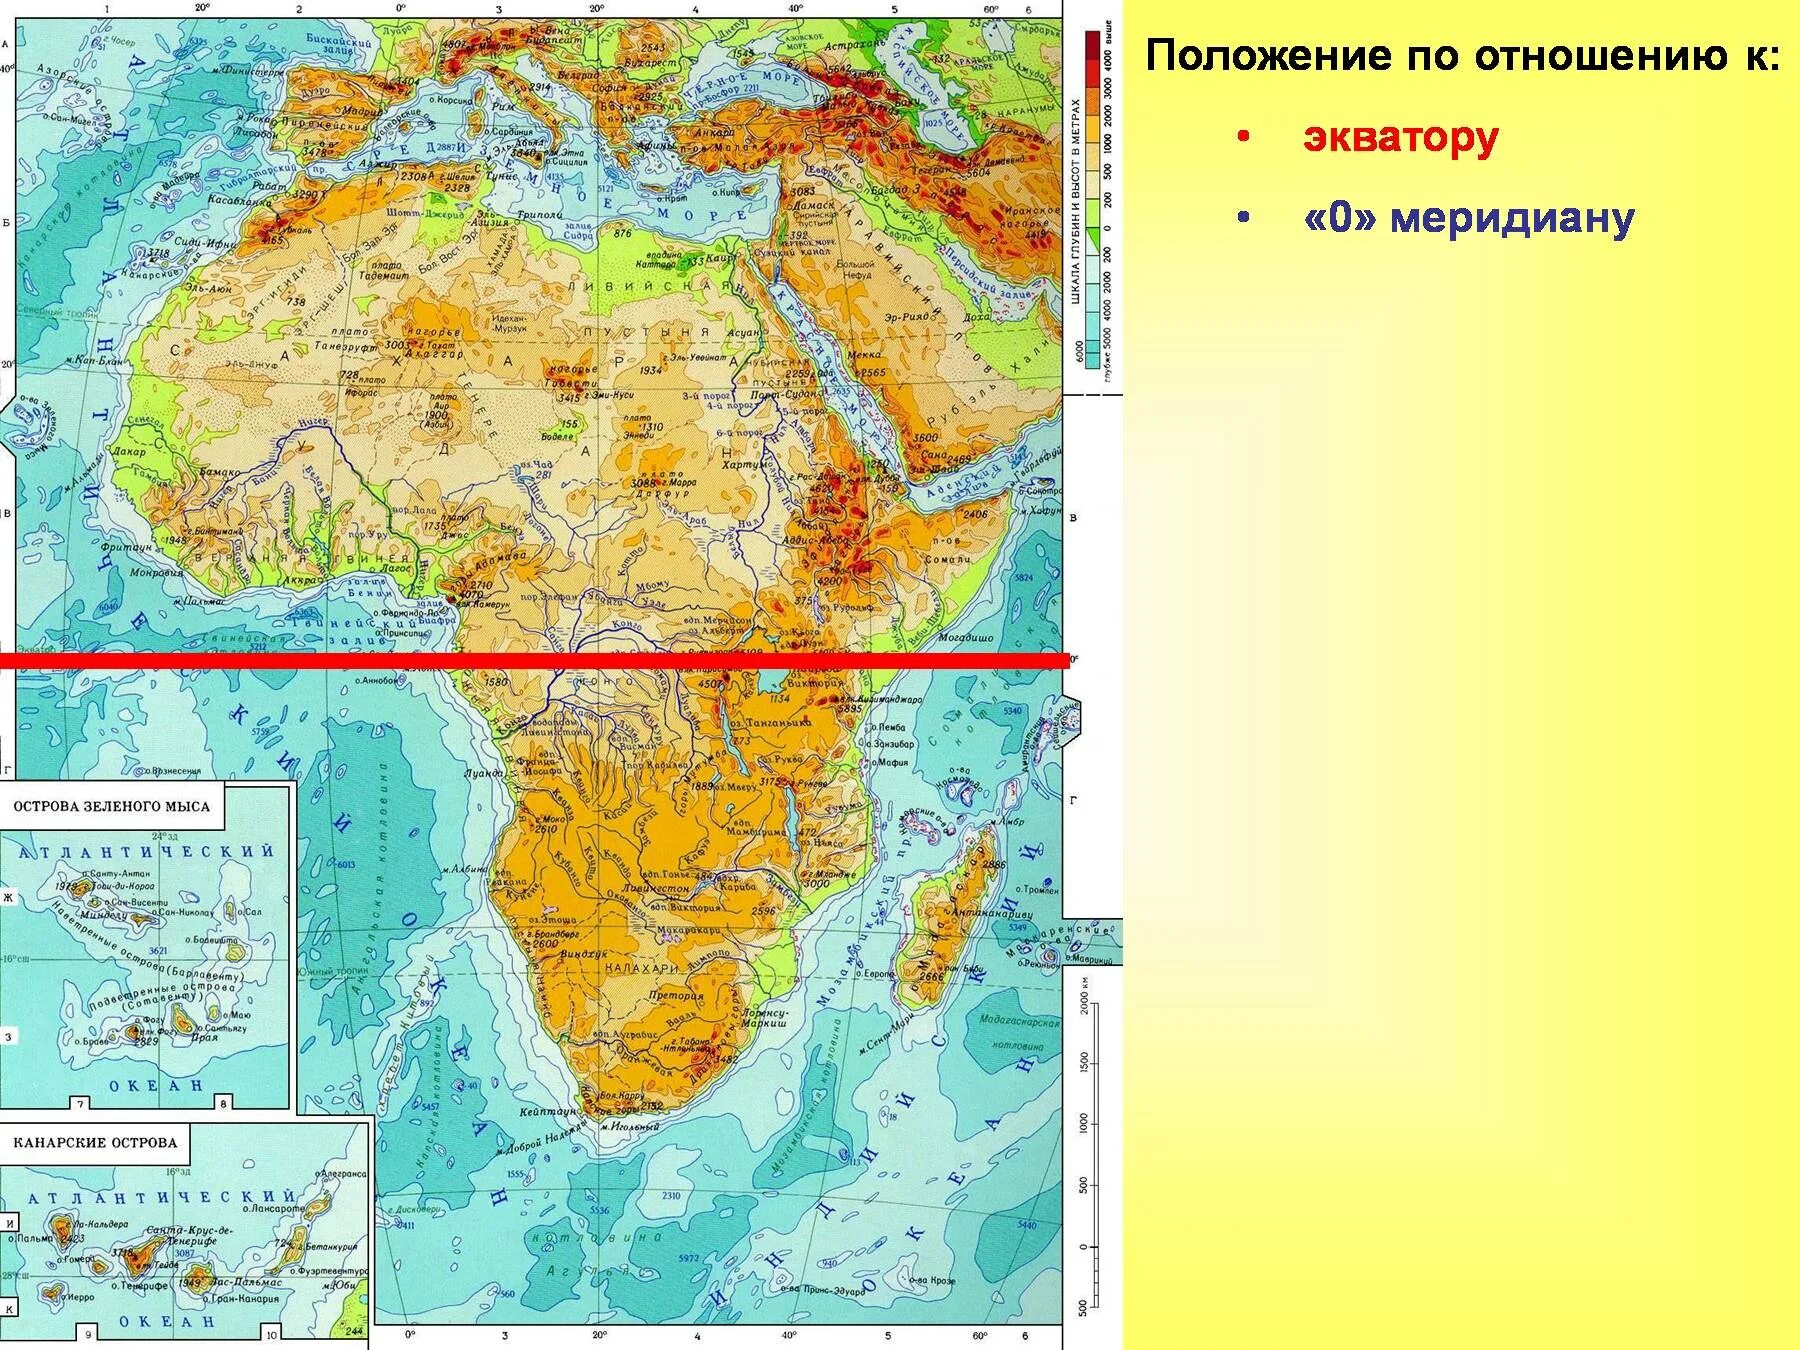 Африка береговая линия моря. Крупные географические объекты береговой линии Африки на карте. Береговая линия Африки на карте. Береговая линия Африки 7 класс география. Береговая линия Африки на контурной карте 7 класс.